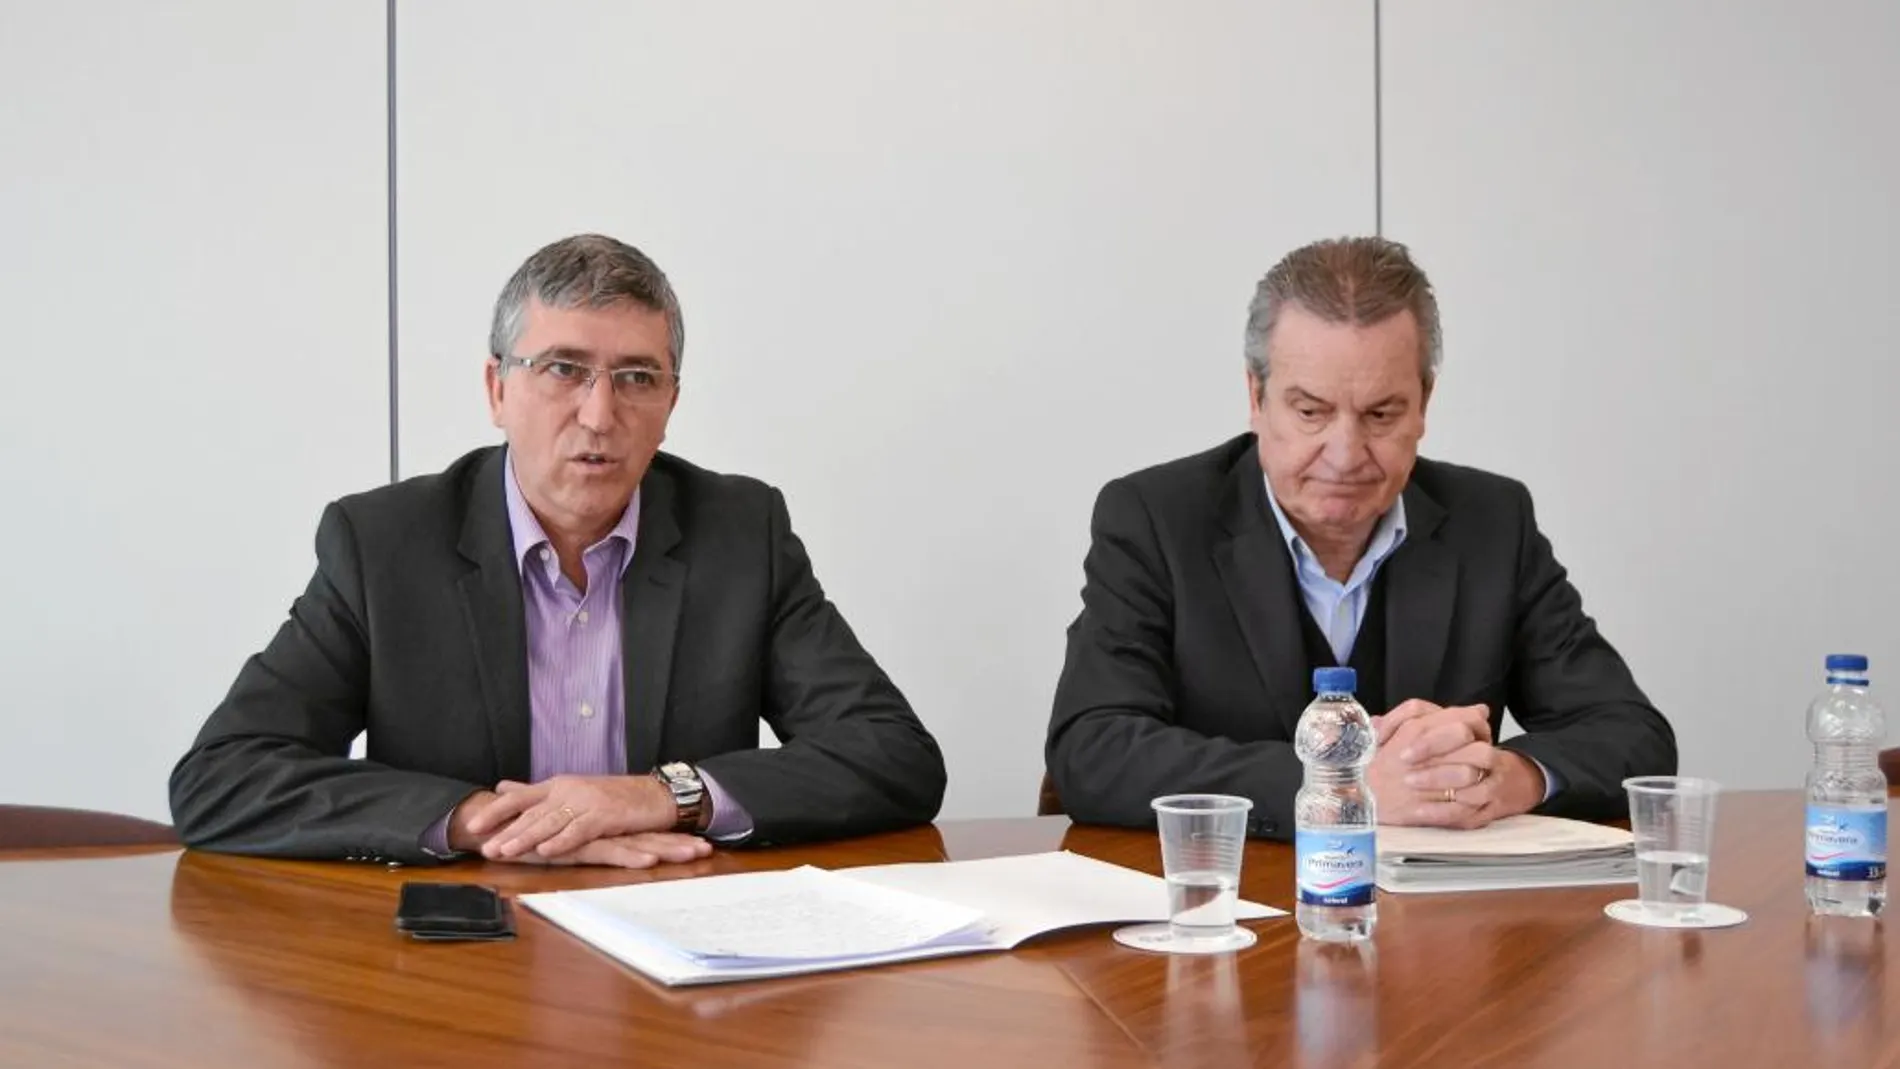 El conseller de Economía Sostenible, Rafael Climent, y el director general de Economía, Paco Álvarez